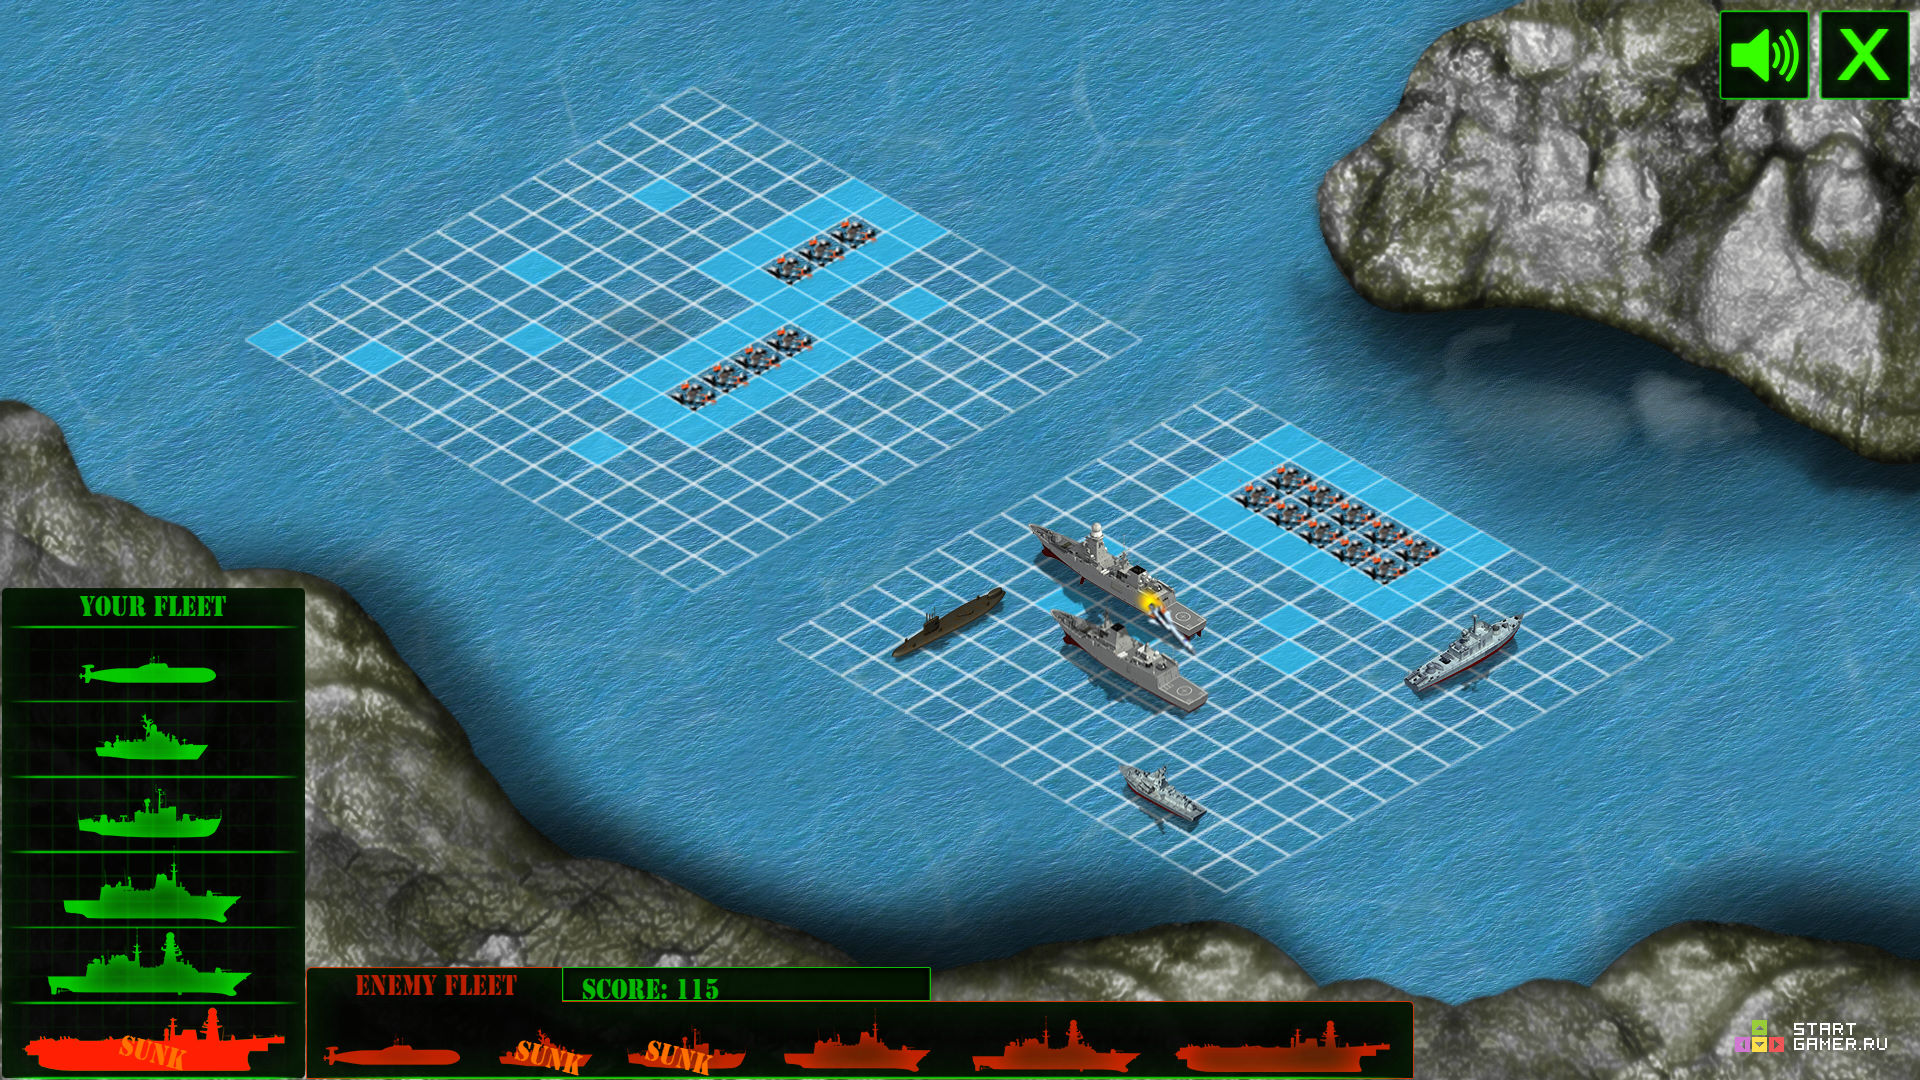 Игра Морской Бой: Линкор (Battleship War) - играть онлайн бесплатно (изобра...